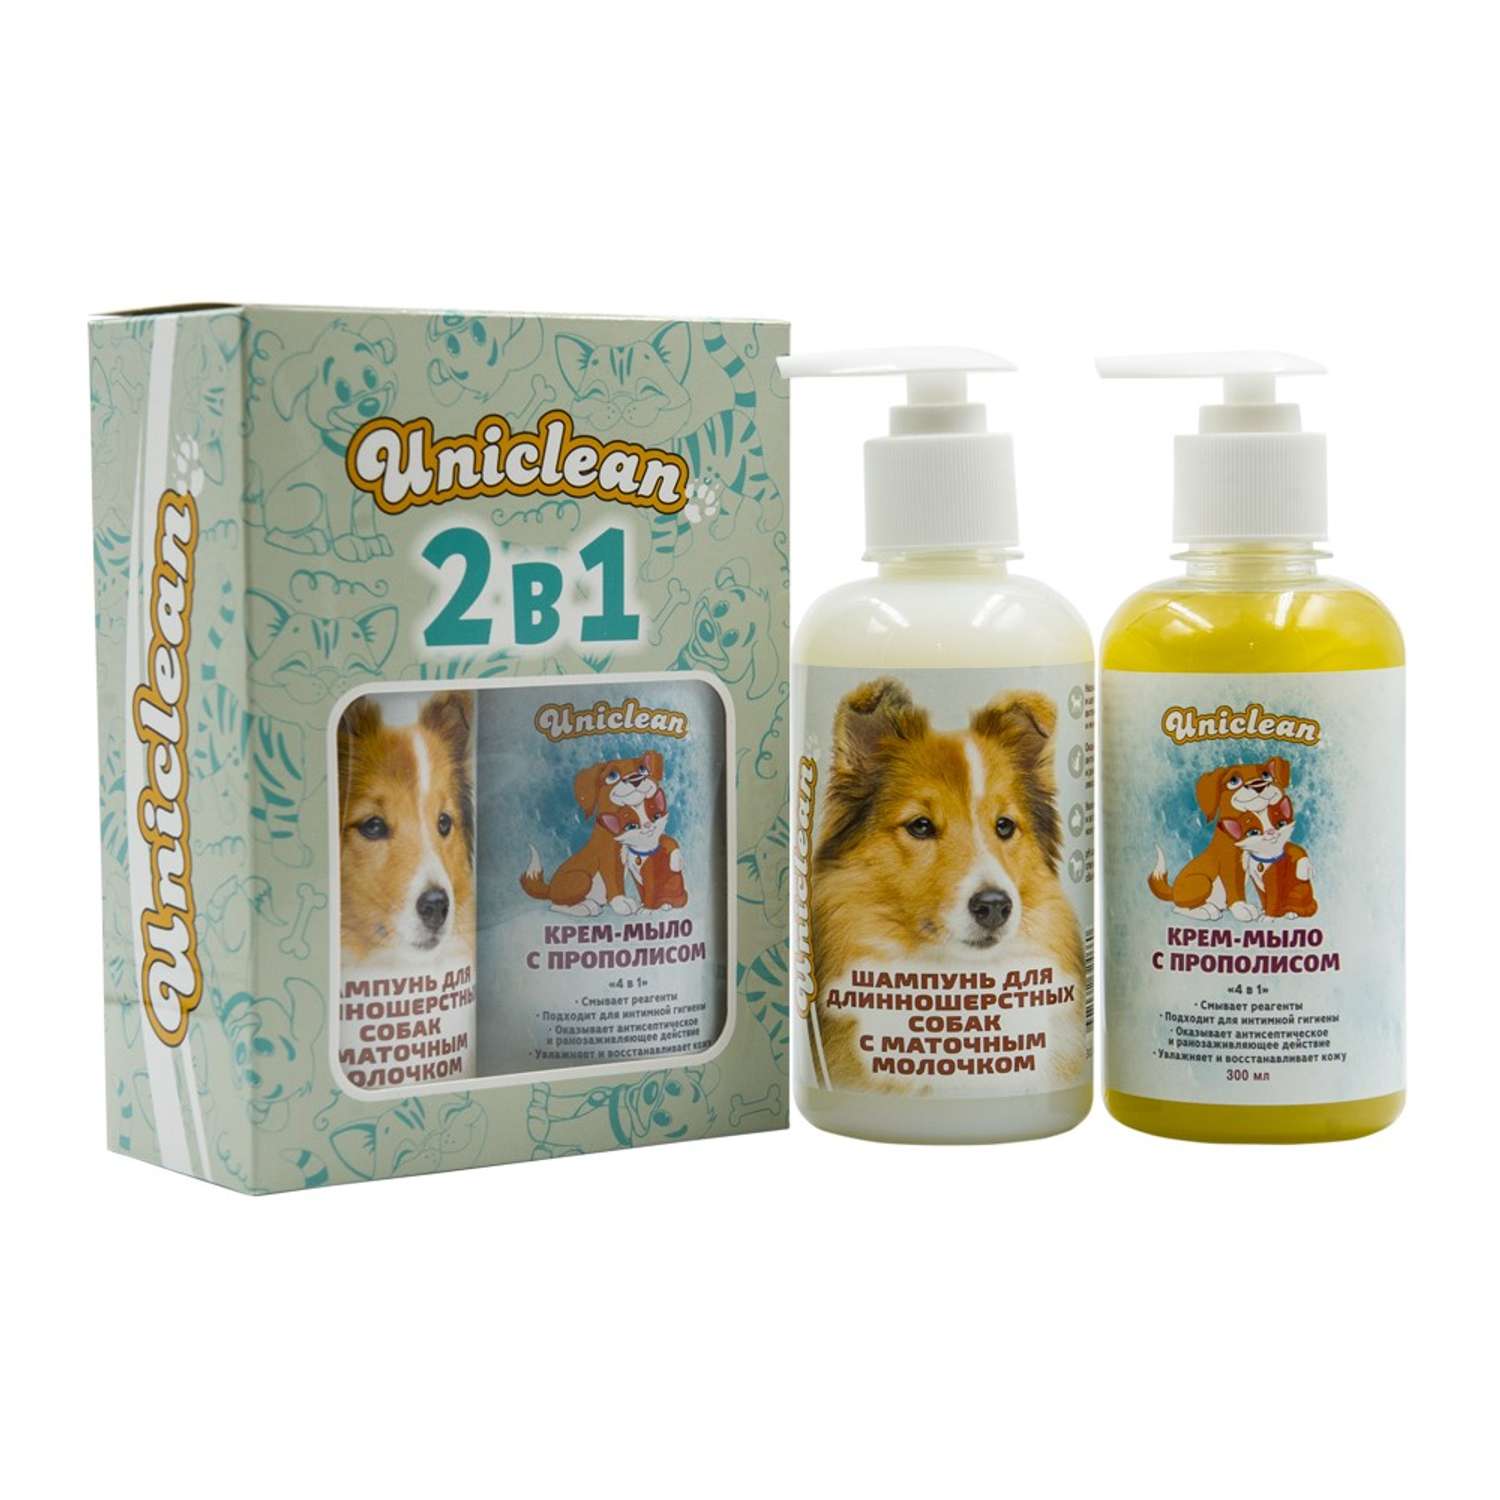 Подарочный набор Uniclean шампунь для длинношерстных собак с маточным молочком и крем-мыло с прополисом - фото 2